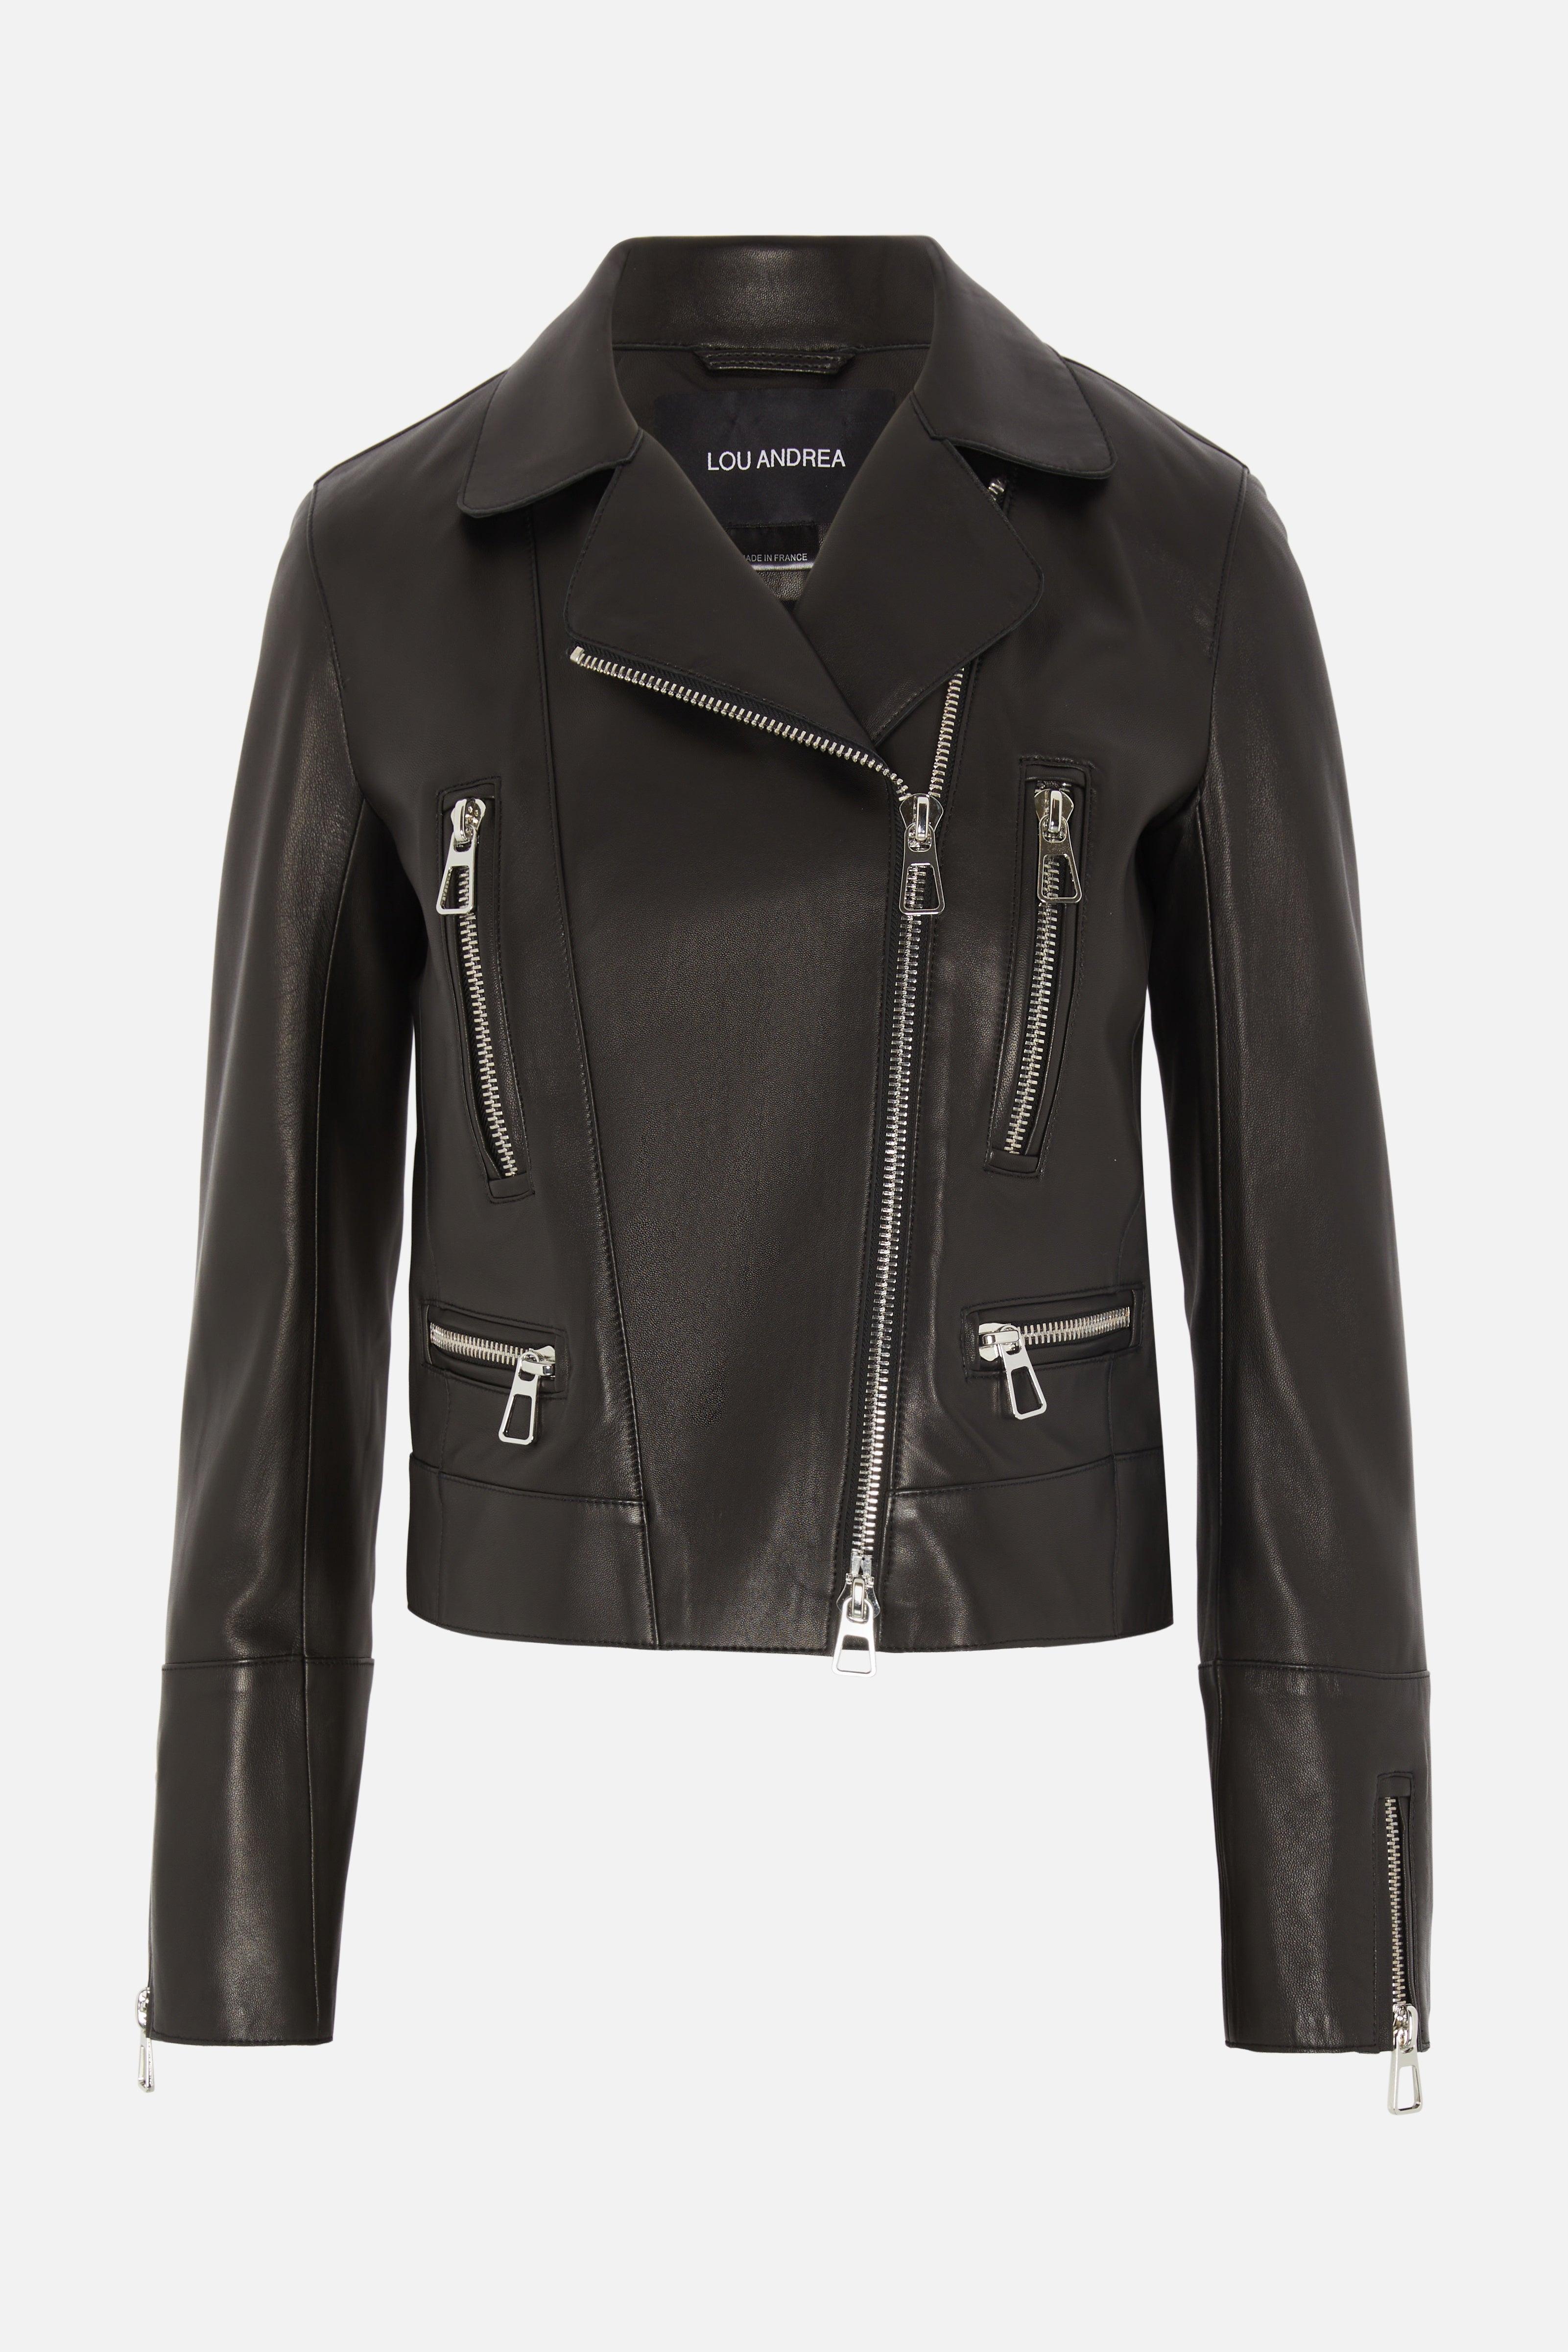 Lou Andrea Metro Biker Leather Jacket in Black | Lyst